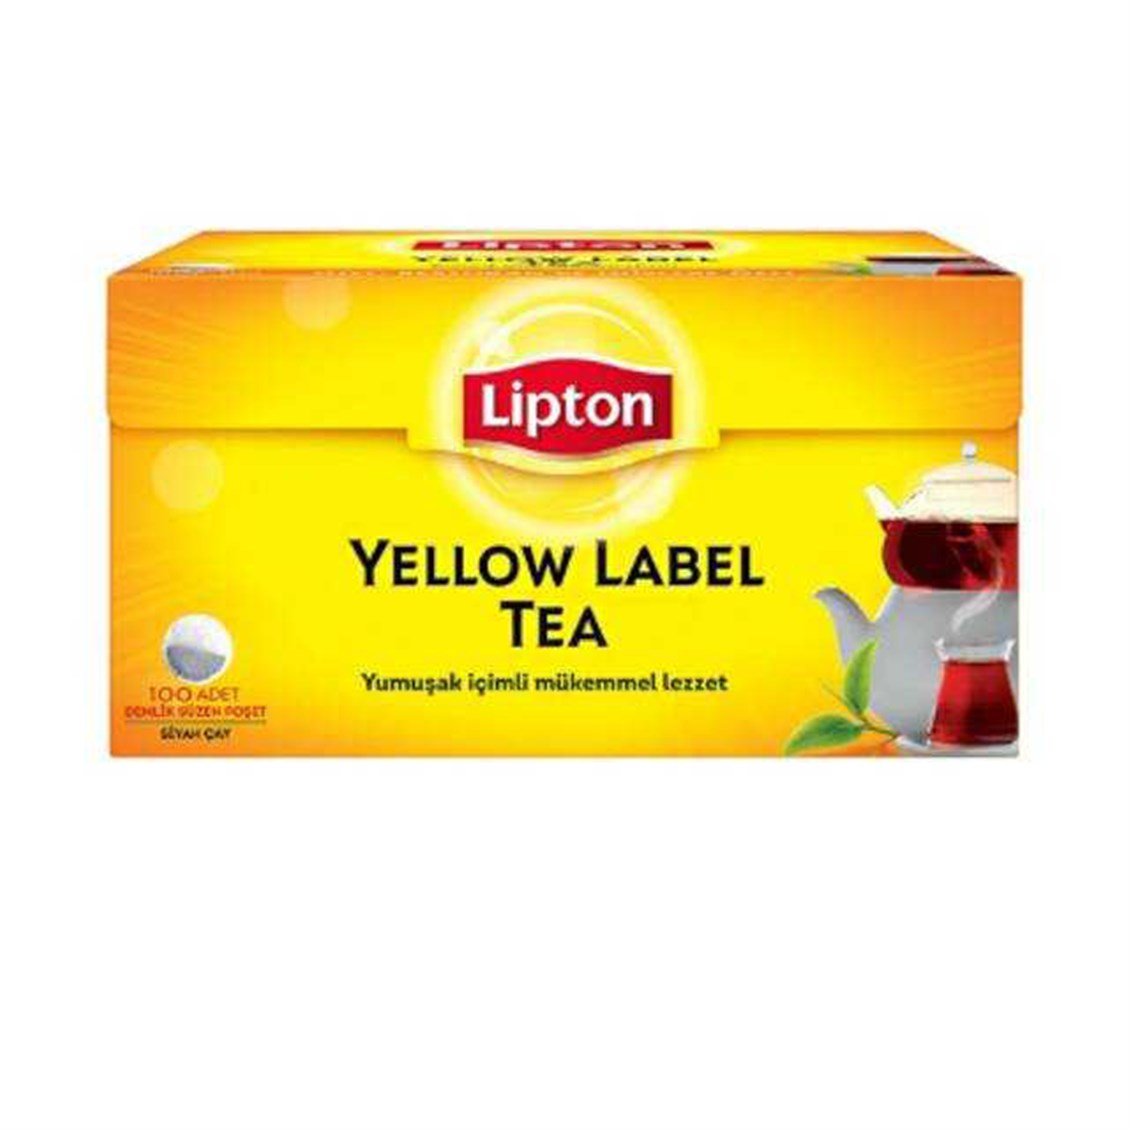 Lipton Yellow Label 100'Lü Demlik Poşet Çay 320 Gr - Onur Market